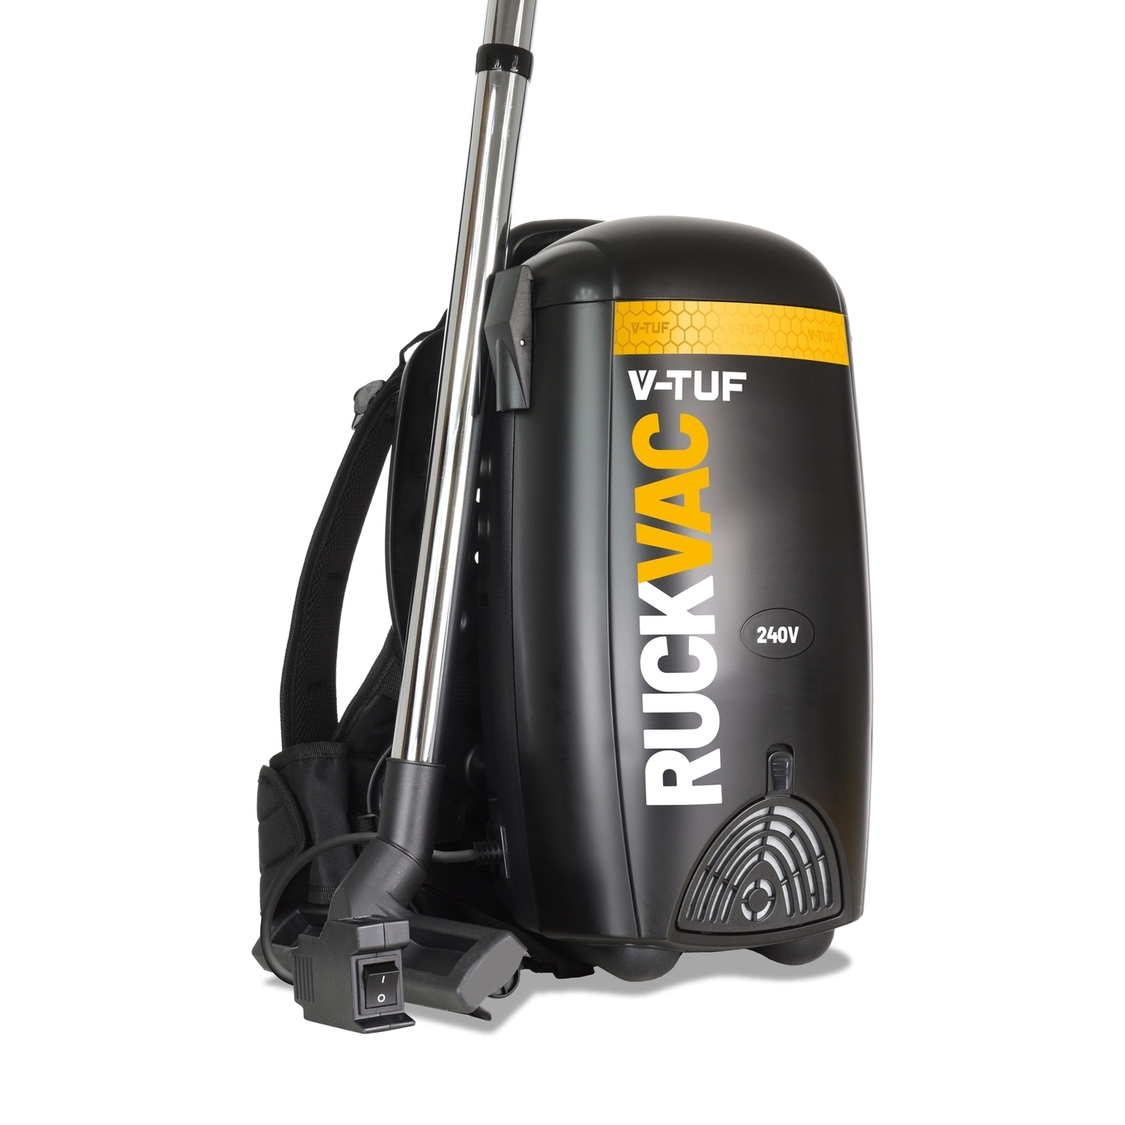 V-TUF RuckVac 240v Industrial Backpack Vacuum Cleaner - with Lung Safe Hepa Filtration